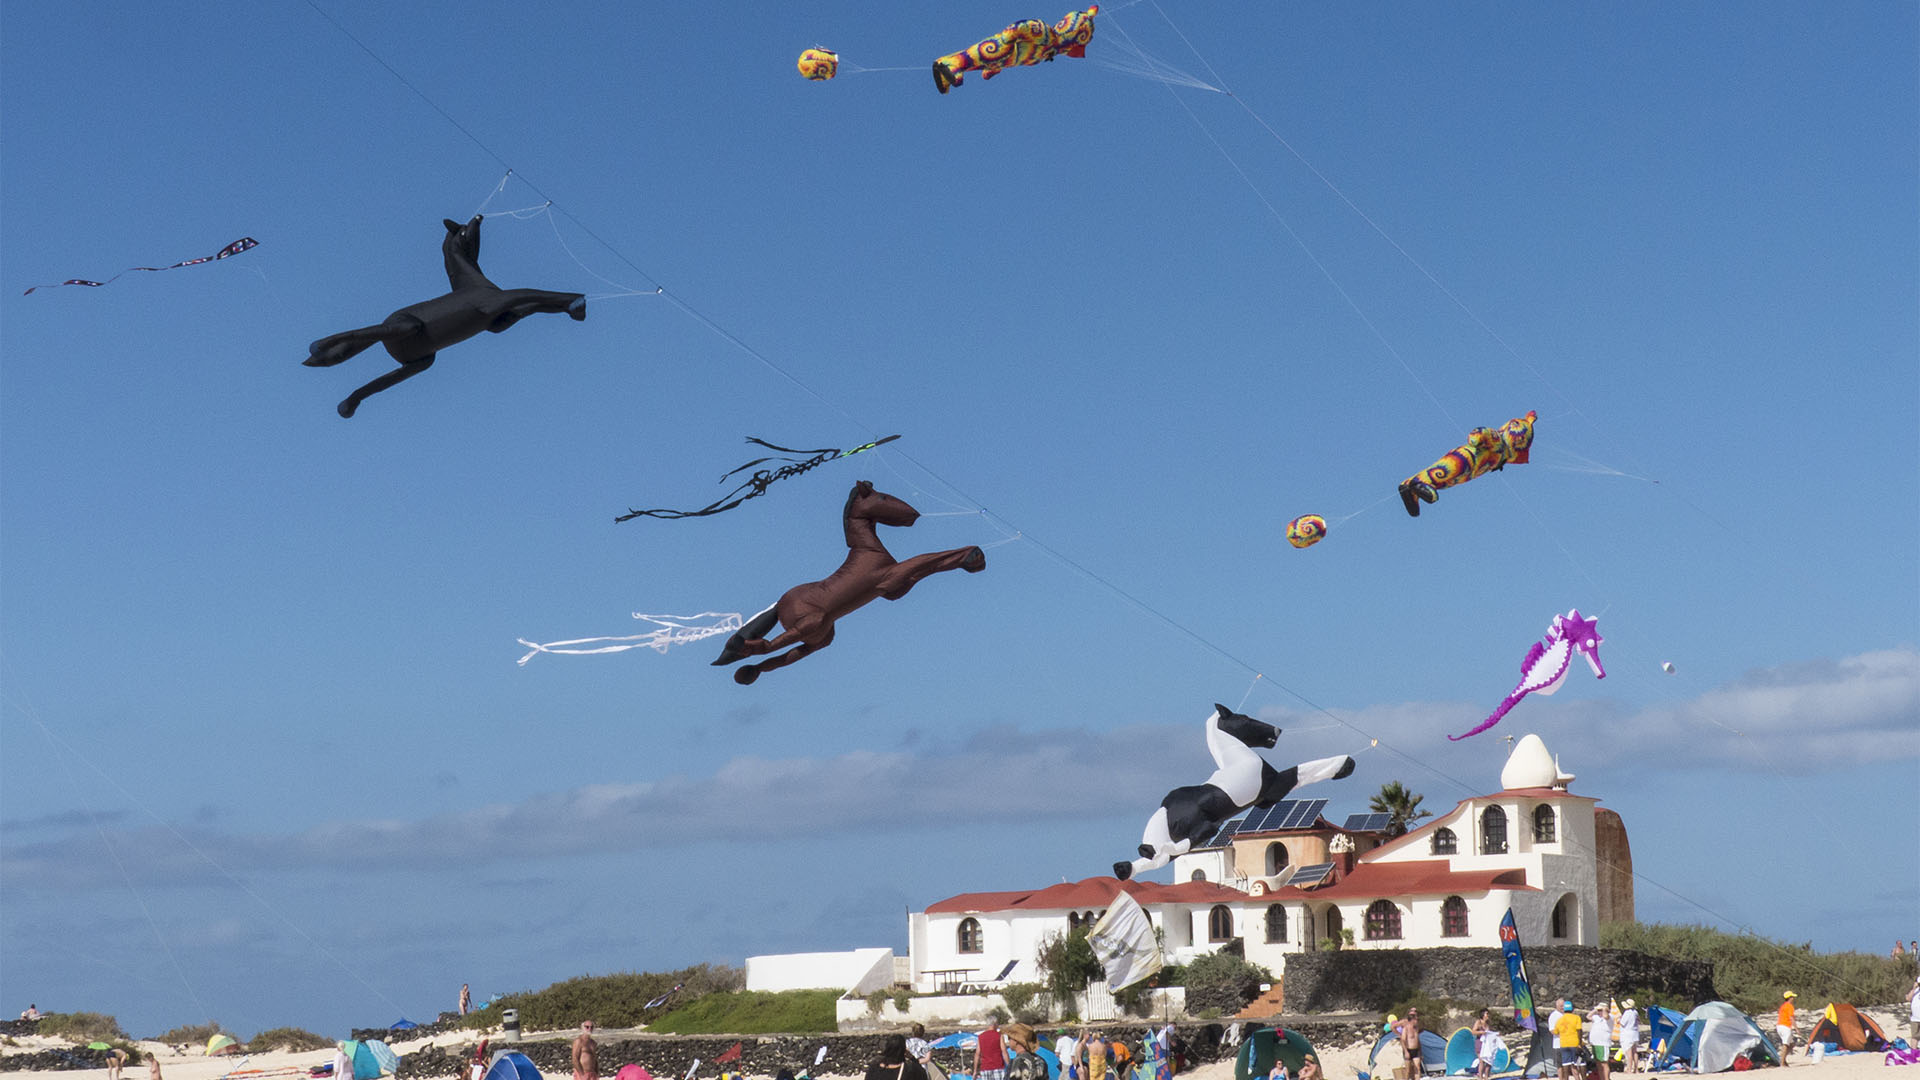 Kunst Kulturveranstaltungen Fuerteventura: Internationales Kite Festival Fuerteventura.